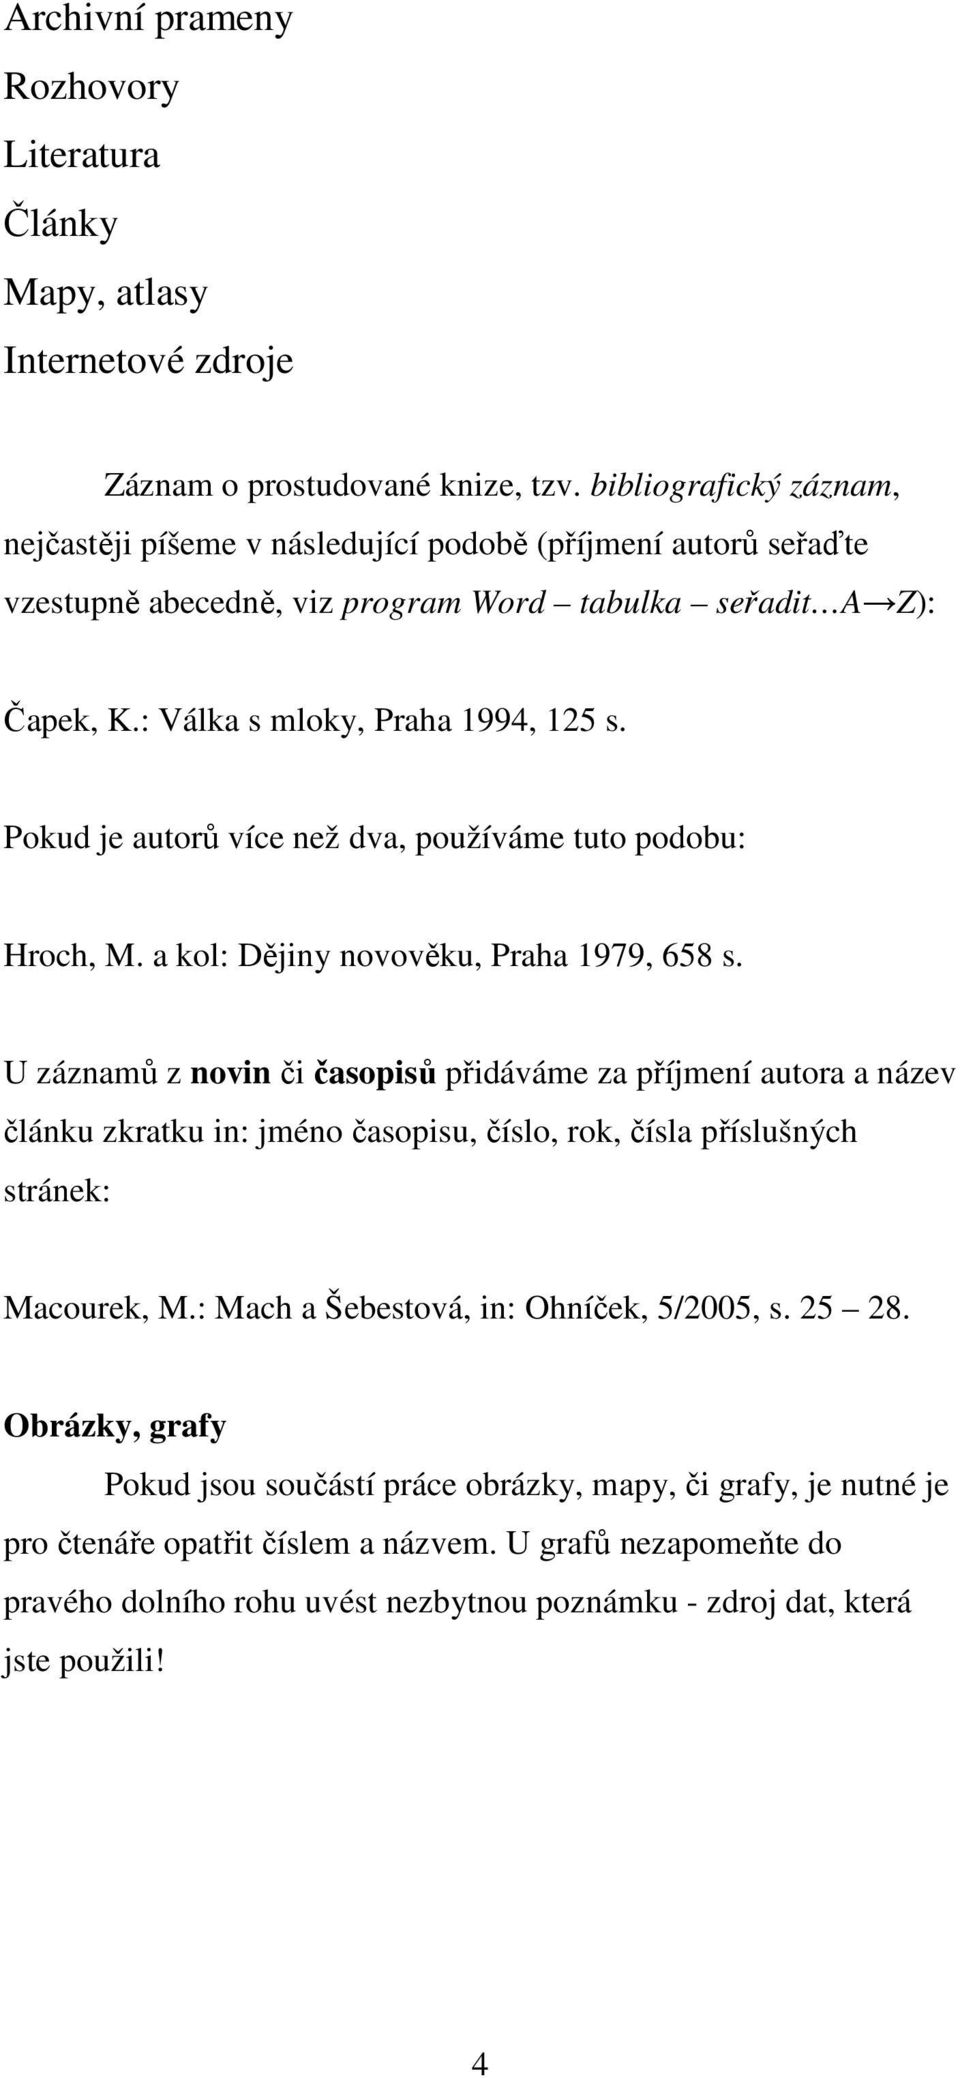 Pokud je autorů více než dva, používáme tuto podobu: Hroch, M. a kol: Dějiny novověku, Praha 1979, 658 s.